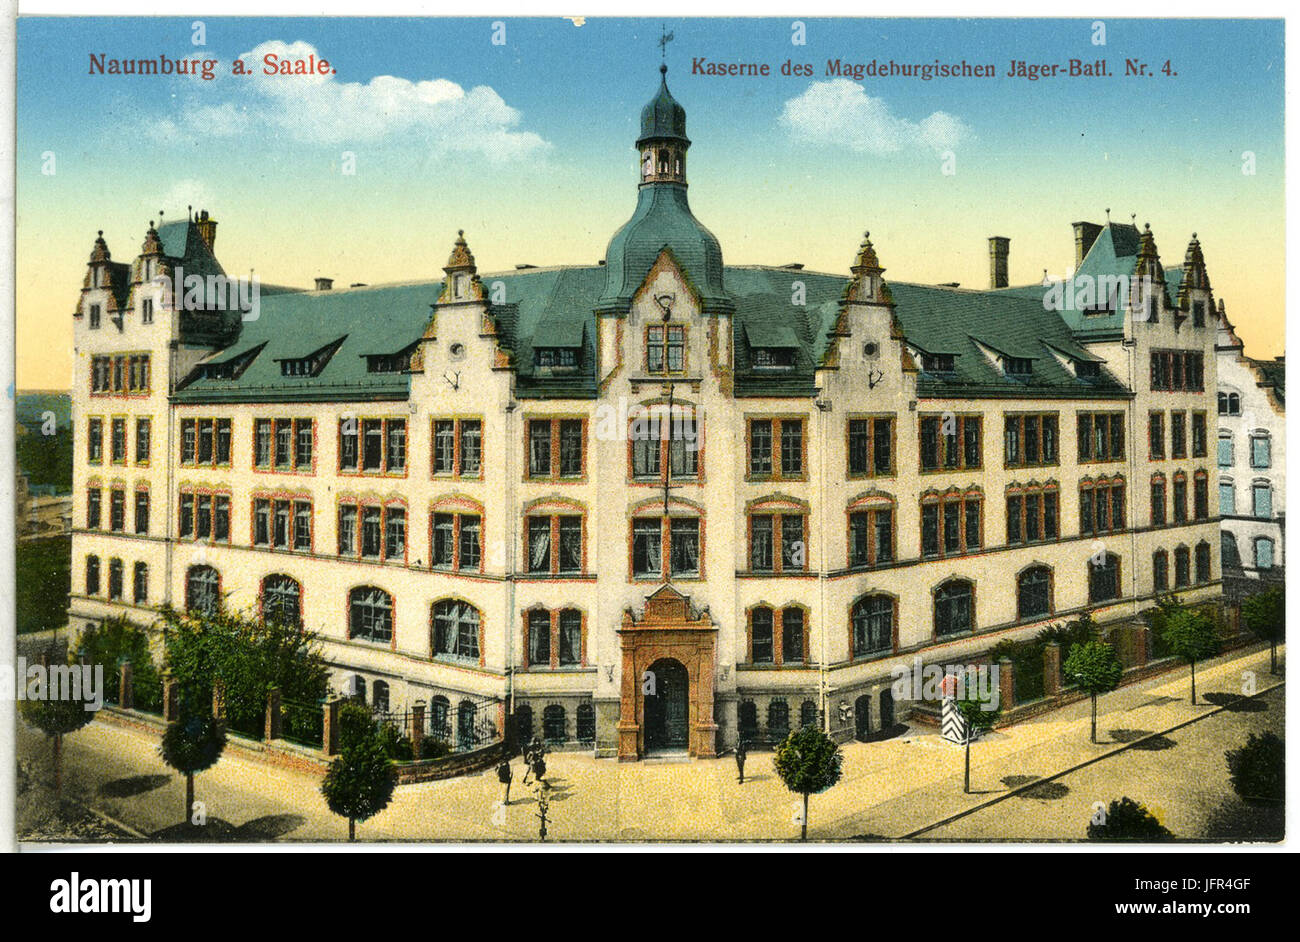 14095-Naumburg-1912-Kaserne des Magdeburger Jäger-Bataillon Nr. 4-Brück & Sohn Kunstverlag Stock Photo